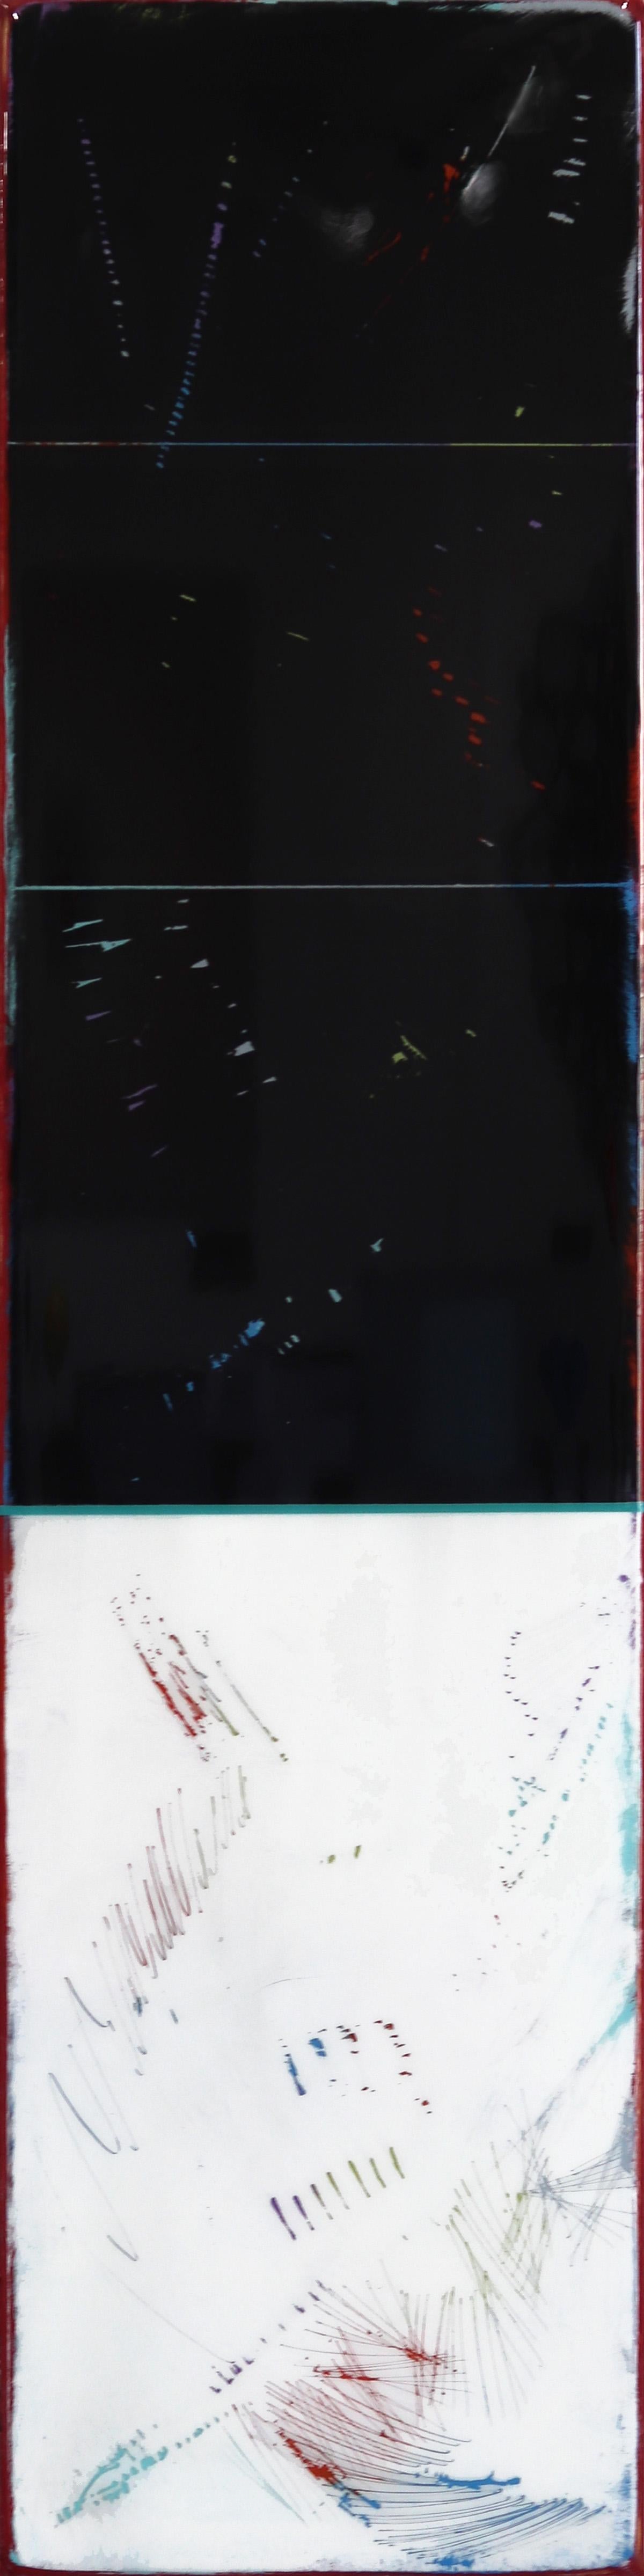 Sunspot 89 - Großes modernes Acryl-Kunstwerk in zwei Farbtönen in Schwarz und Weiß – Mixed Media Art von Ricky Hunt